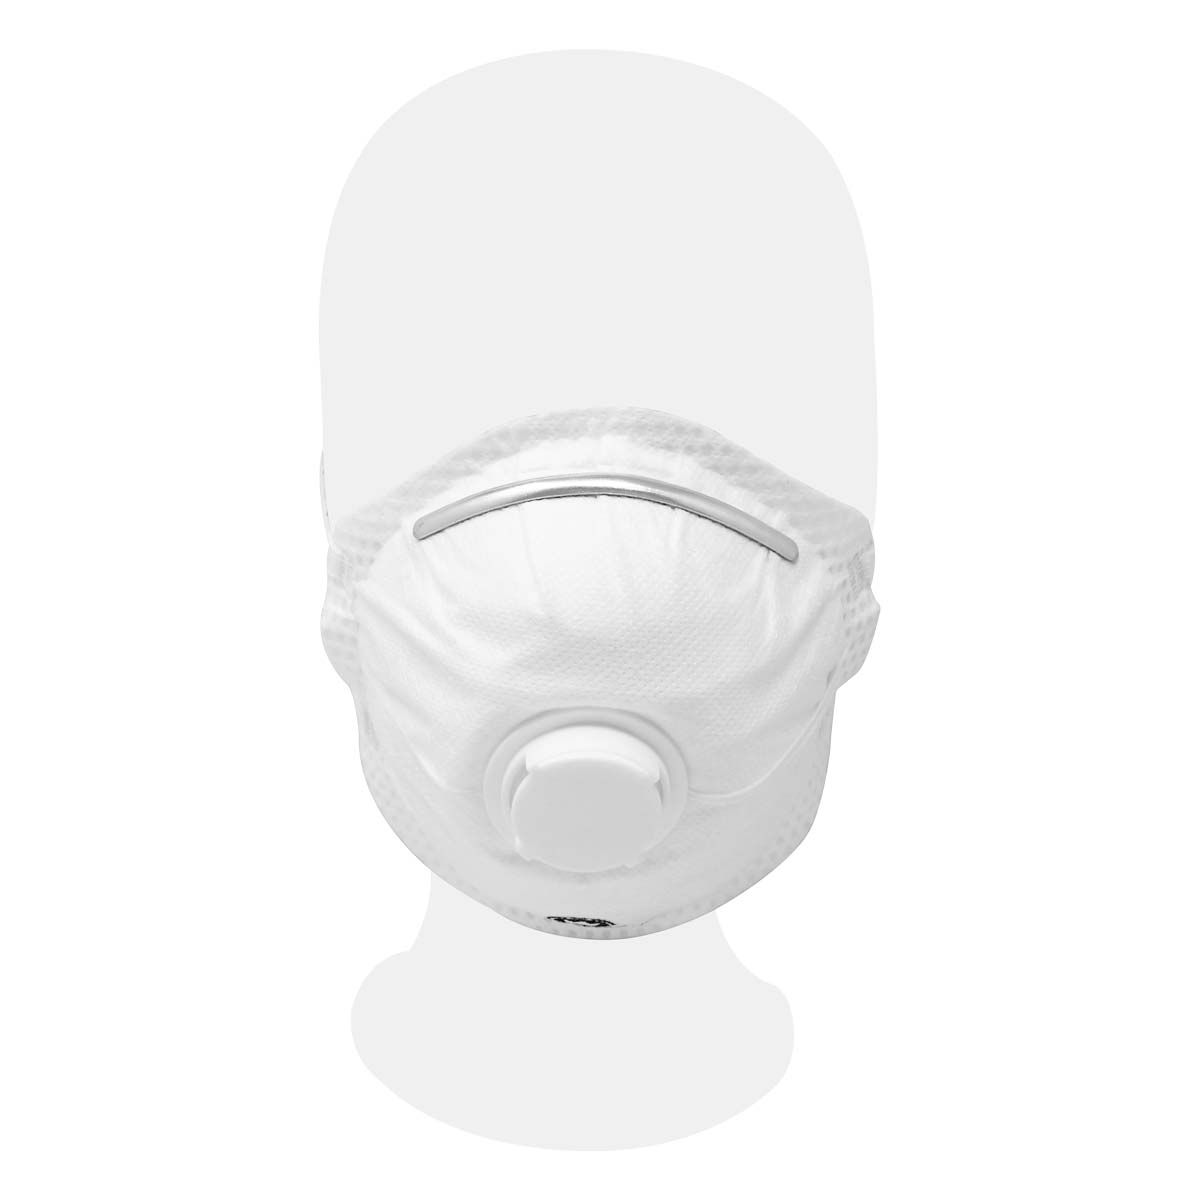 Idicon S.A. - Utiliza mascarilla, guantes, gafas y pantallas protectoras  para evitar inhalación de polvo y gases además de daños en la piel u ojos.